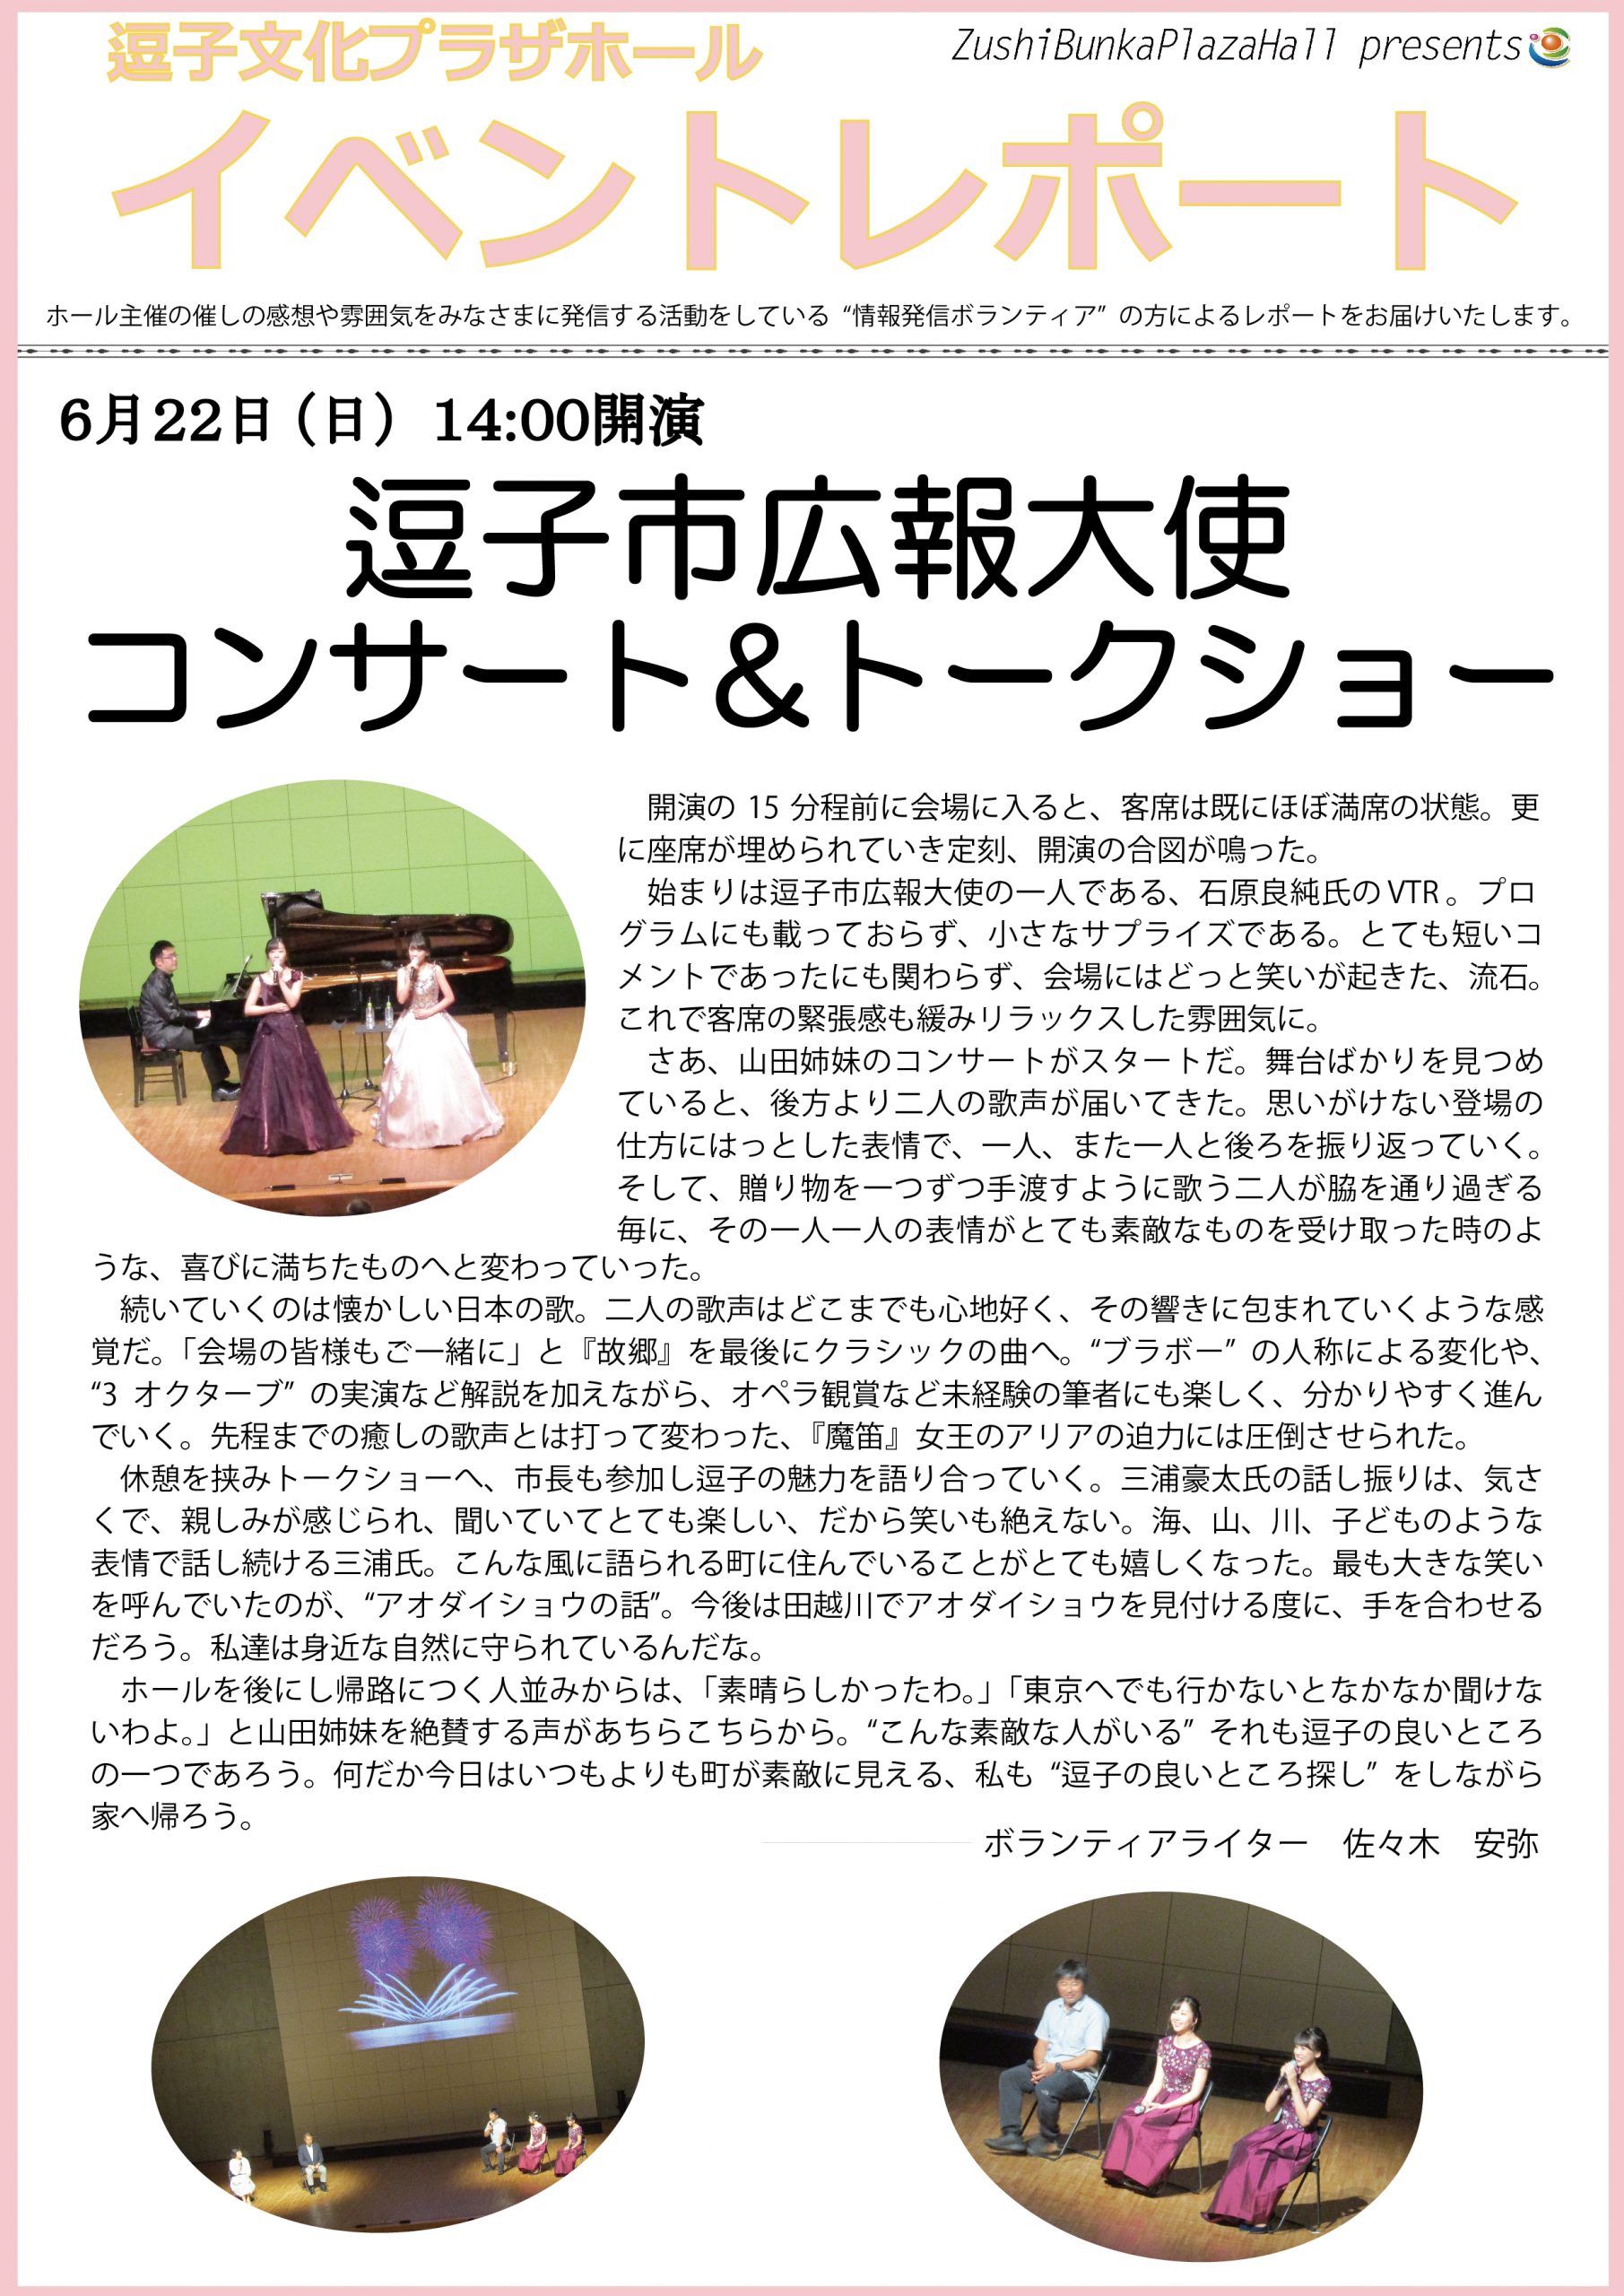 イベントレポート「逗子市広報大使 コンサート&トークショー」2019年6月22日（日）開催